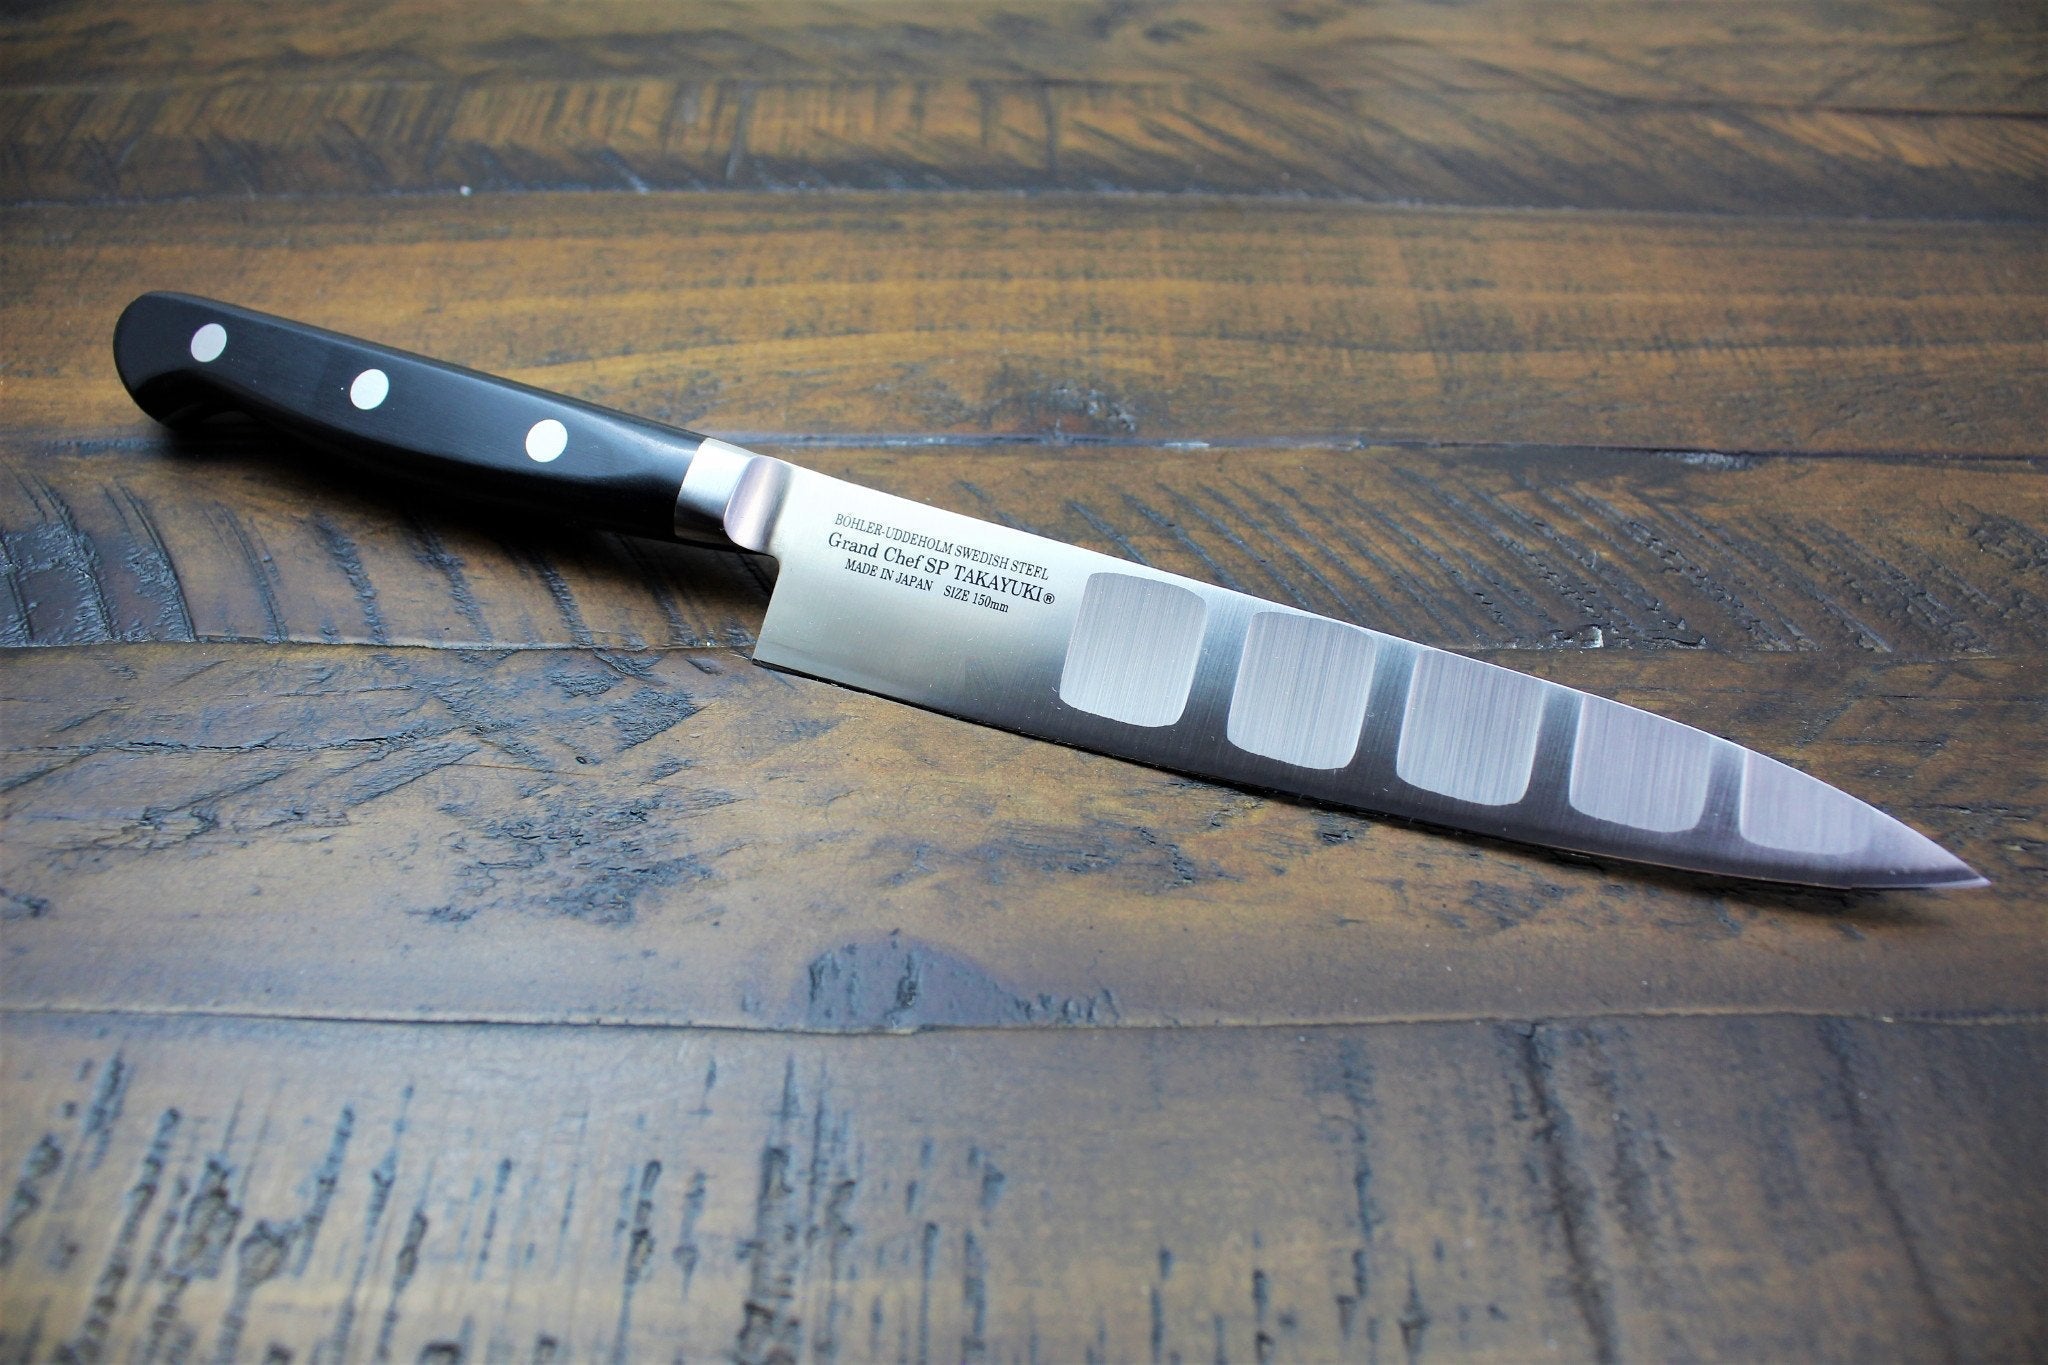 Sakai Takayuki TUS Steel Japanese Chef's Knife SET in Gift Box (Petty 150mm  - Gyuto 210mm - Attache Case)